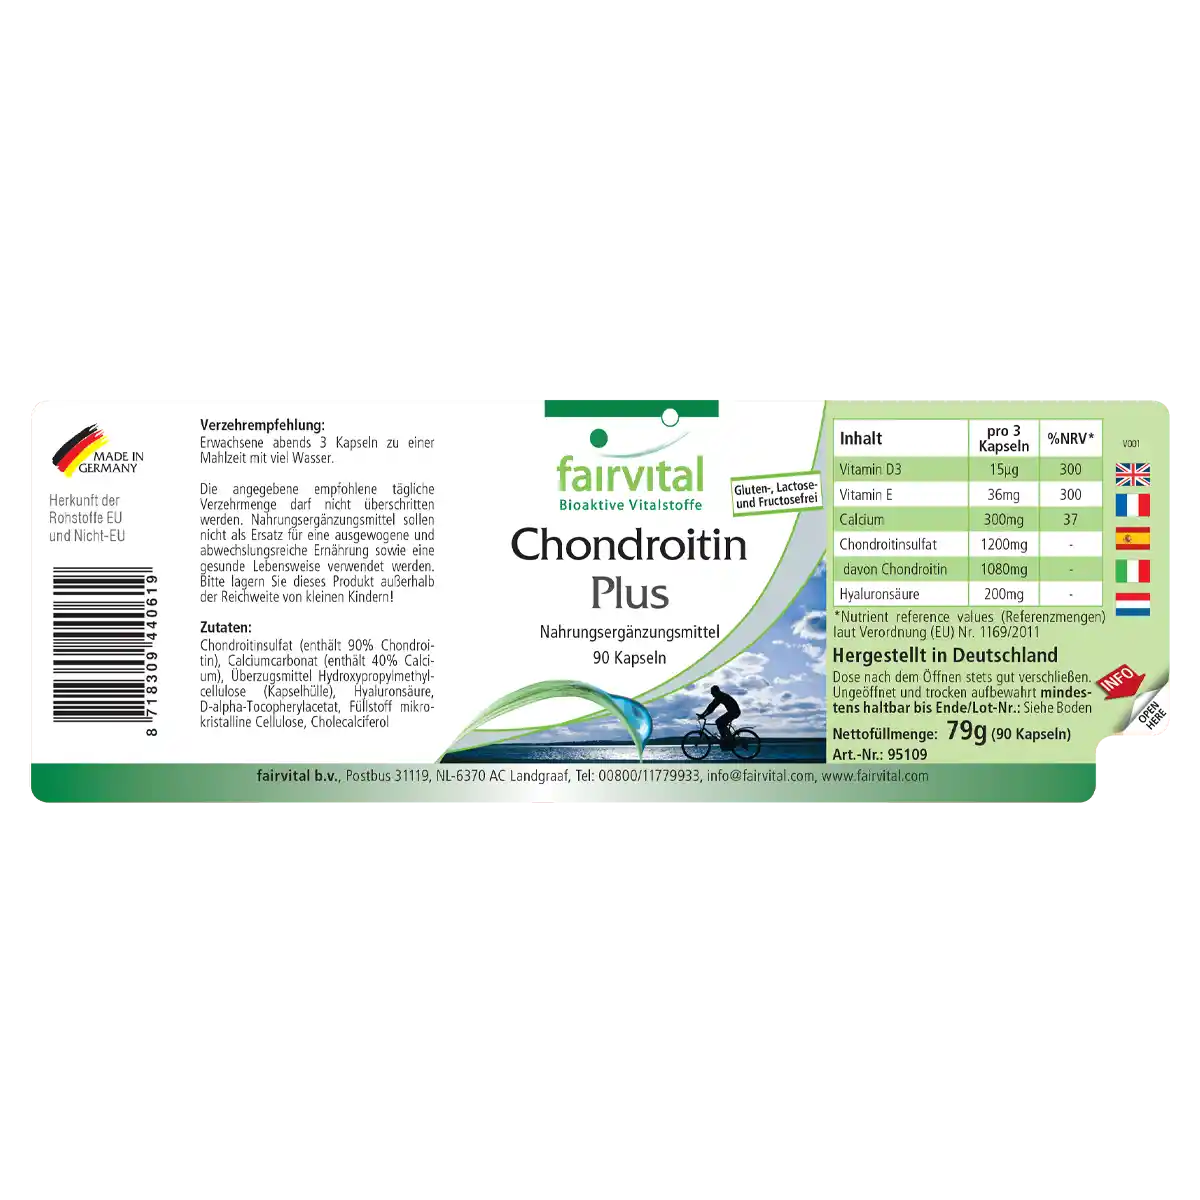 Chondroïtine Plus - 90 capsules